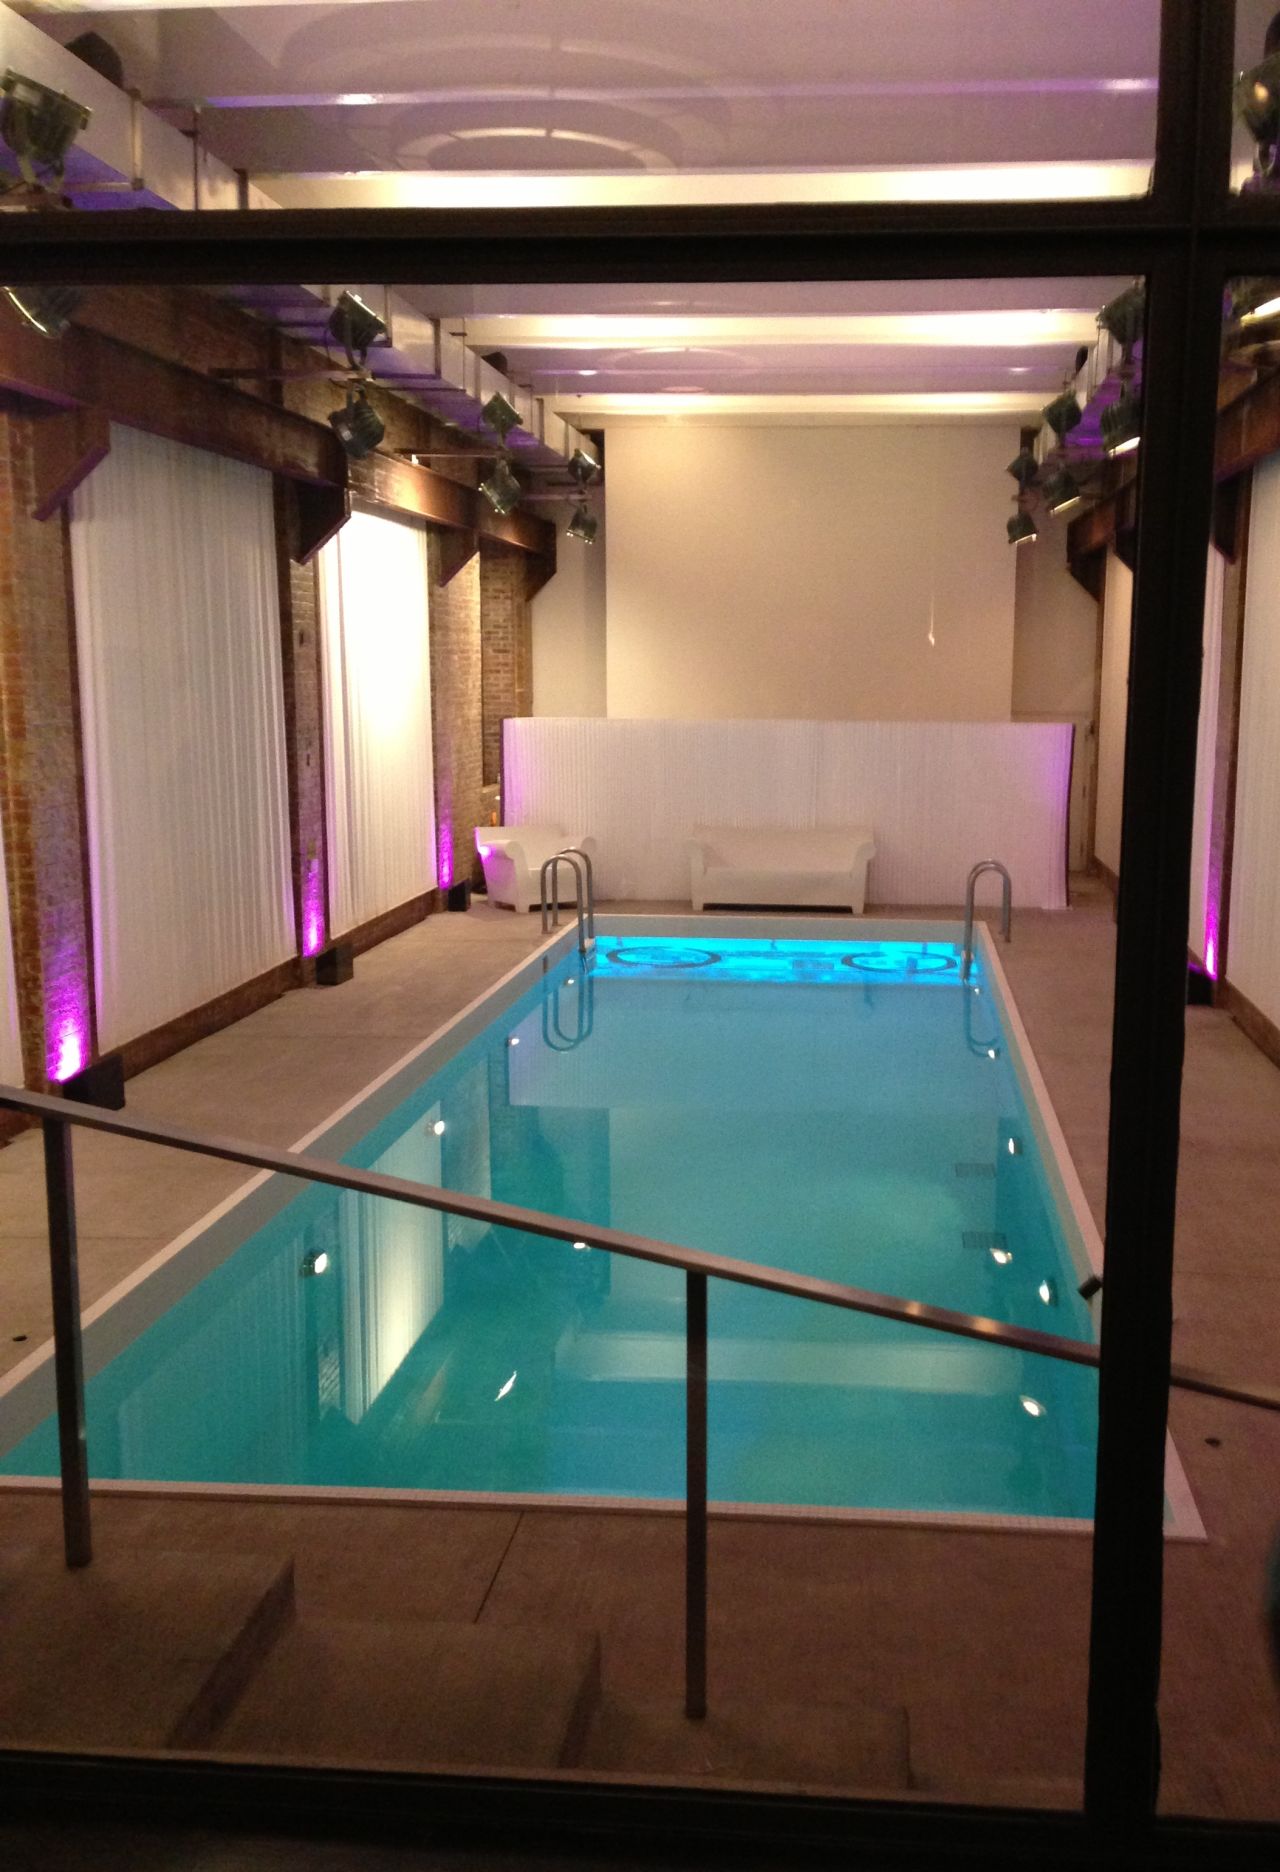 The venue's indoor pool.